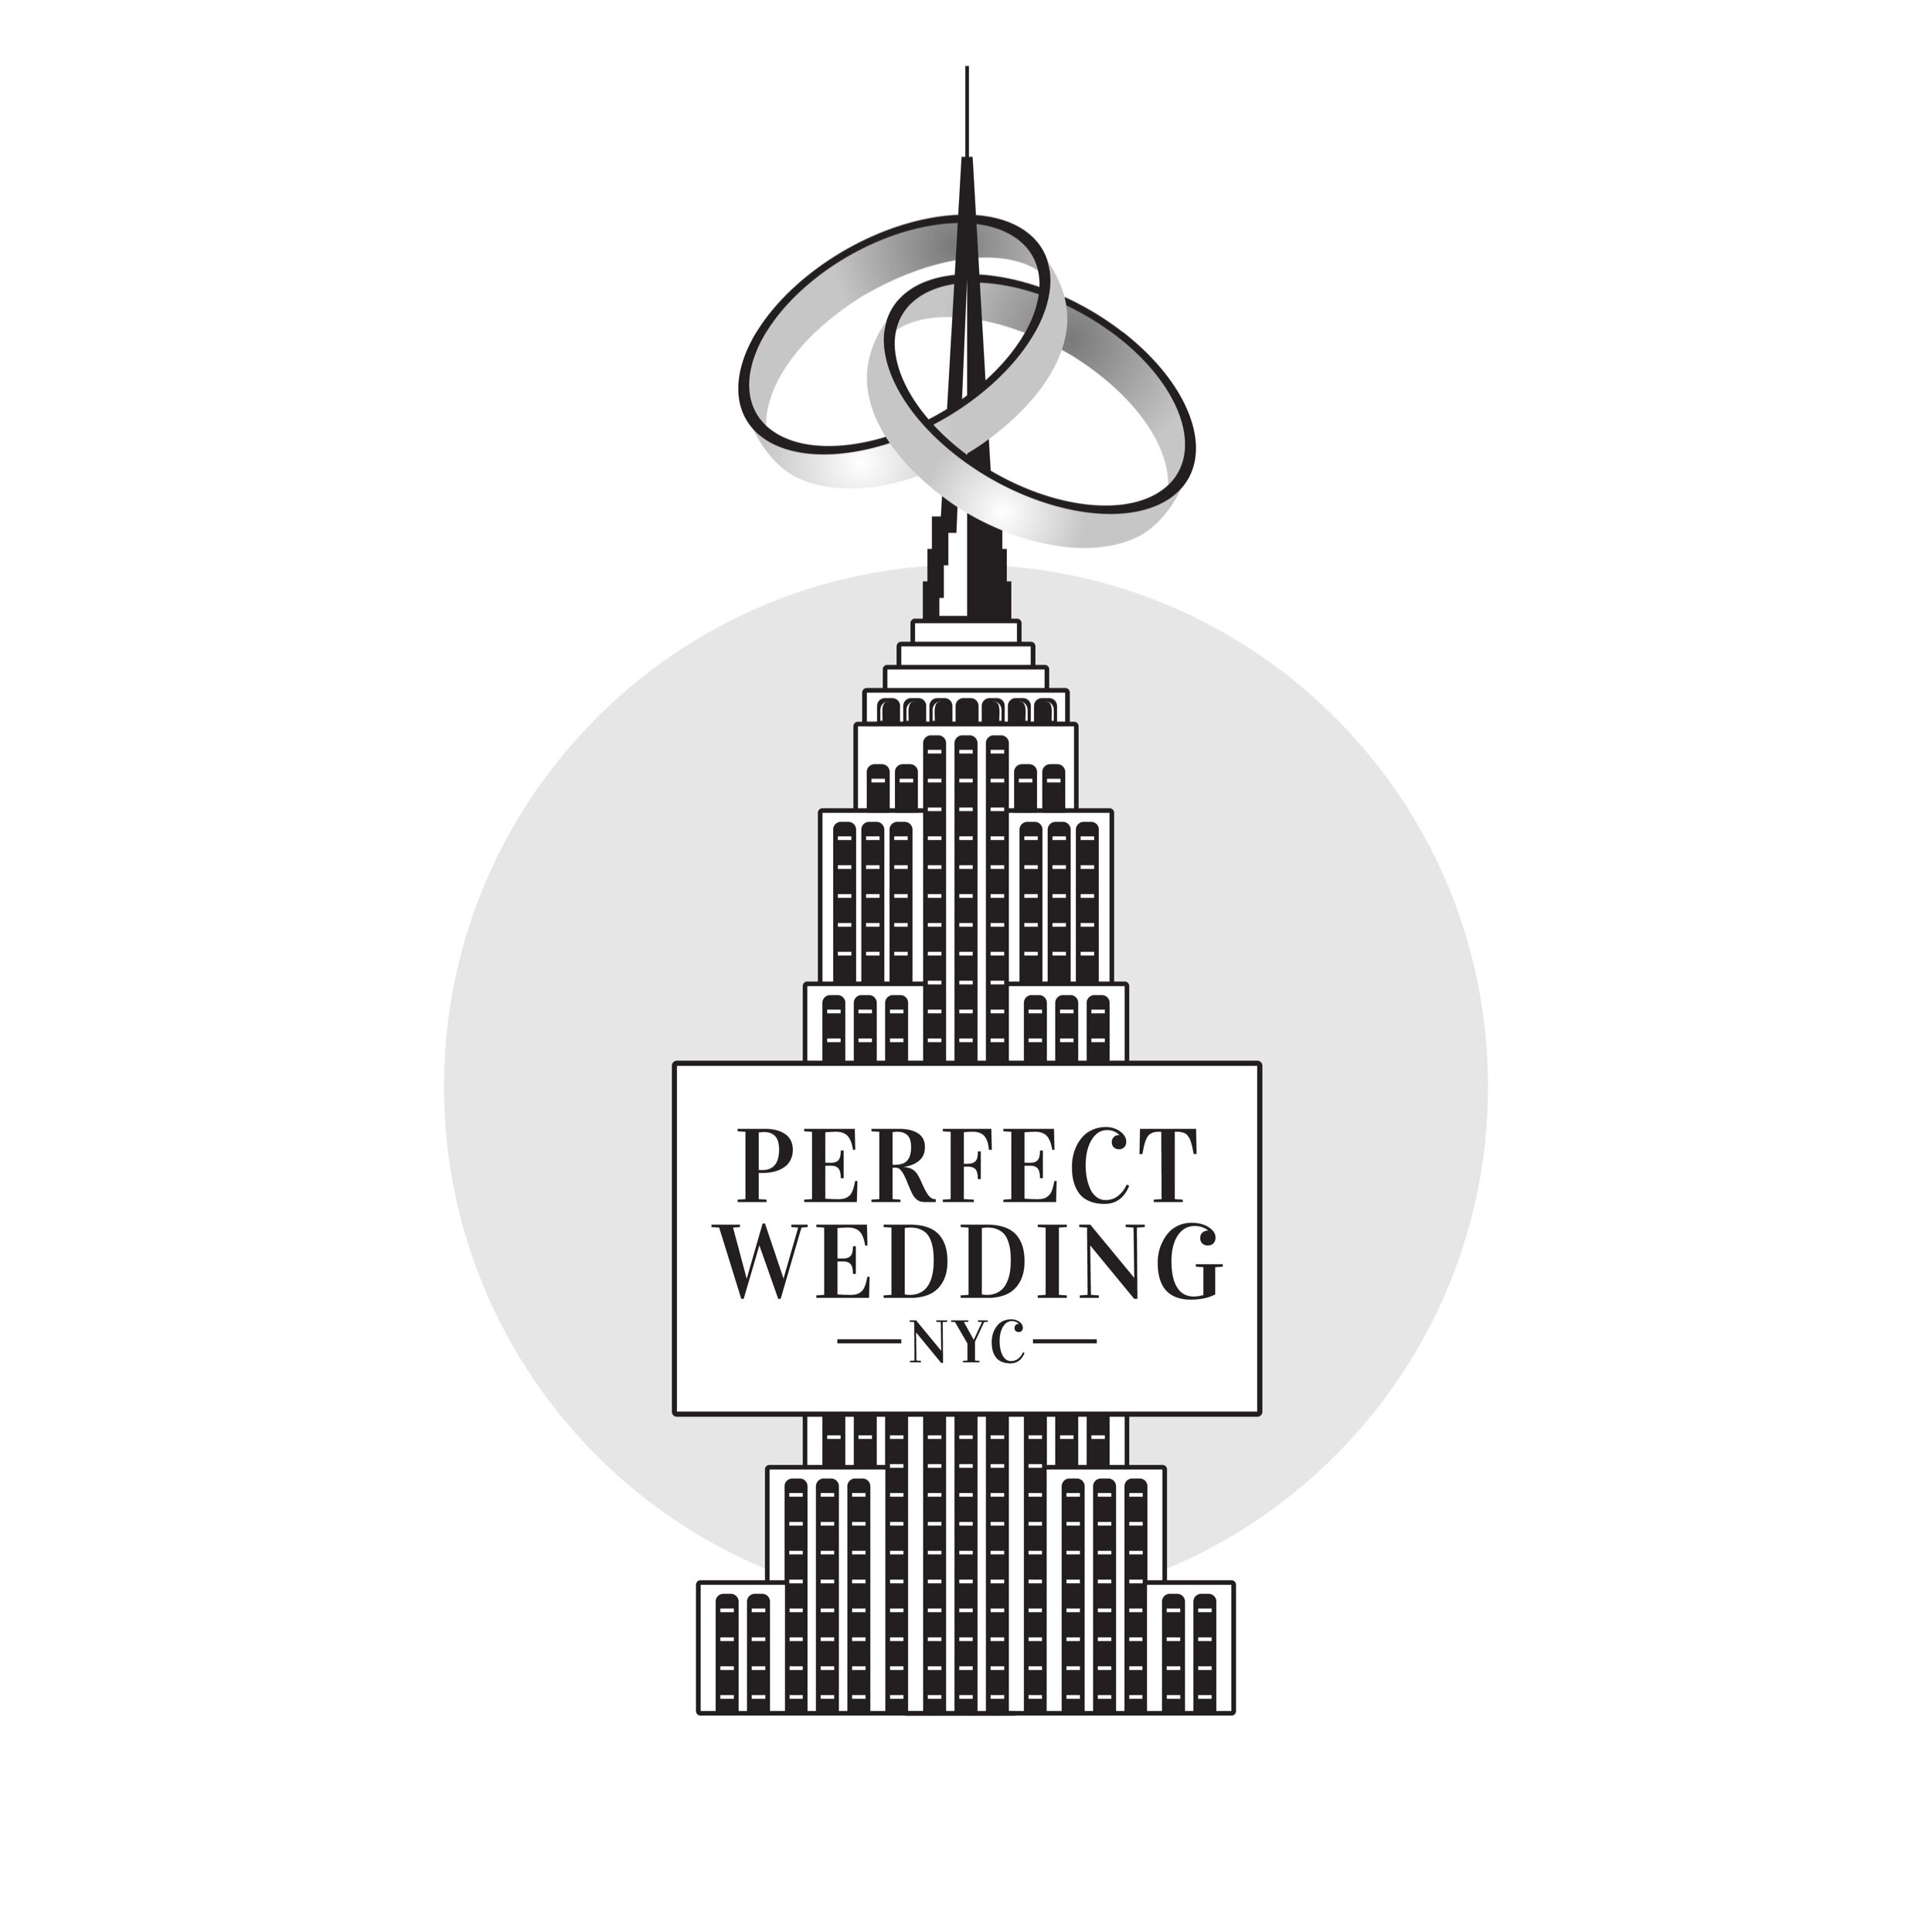 Adquisición por favor confirmar Ponte de pie en su lugar Paquetes de Escapada en Nueva York — Perfect Wedding NYC